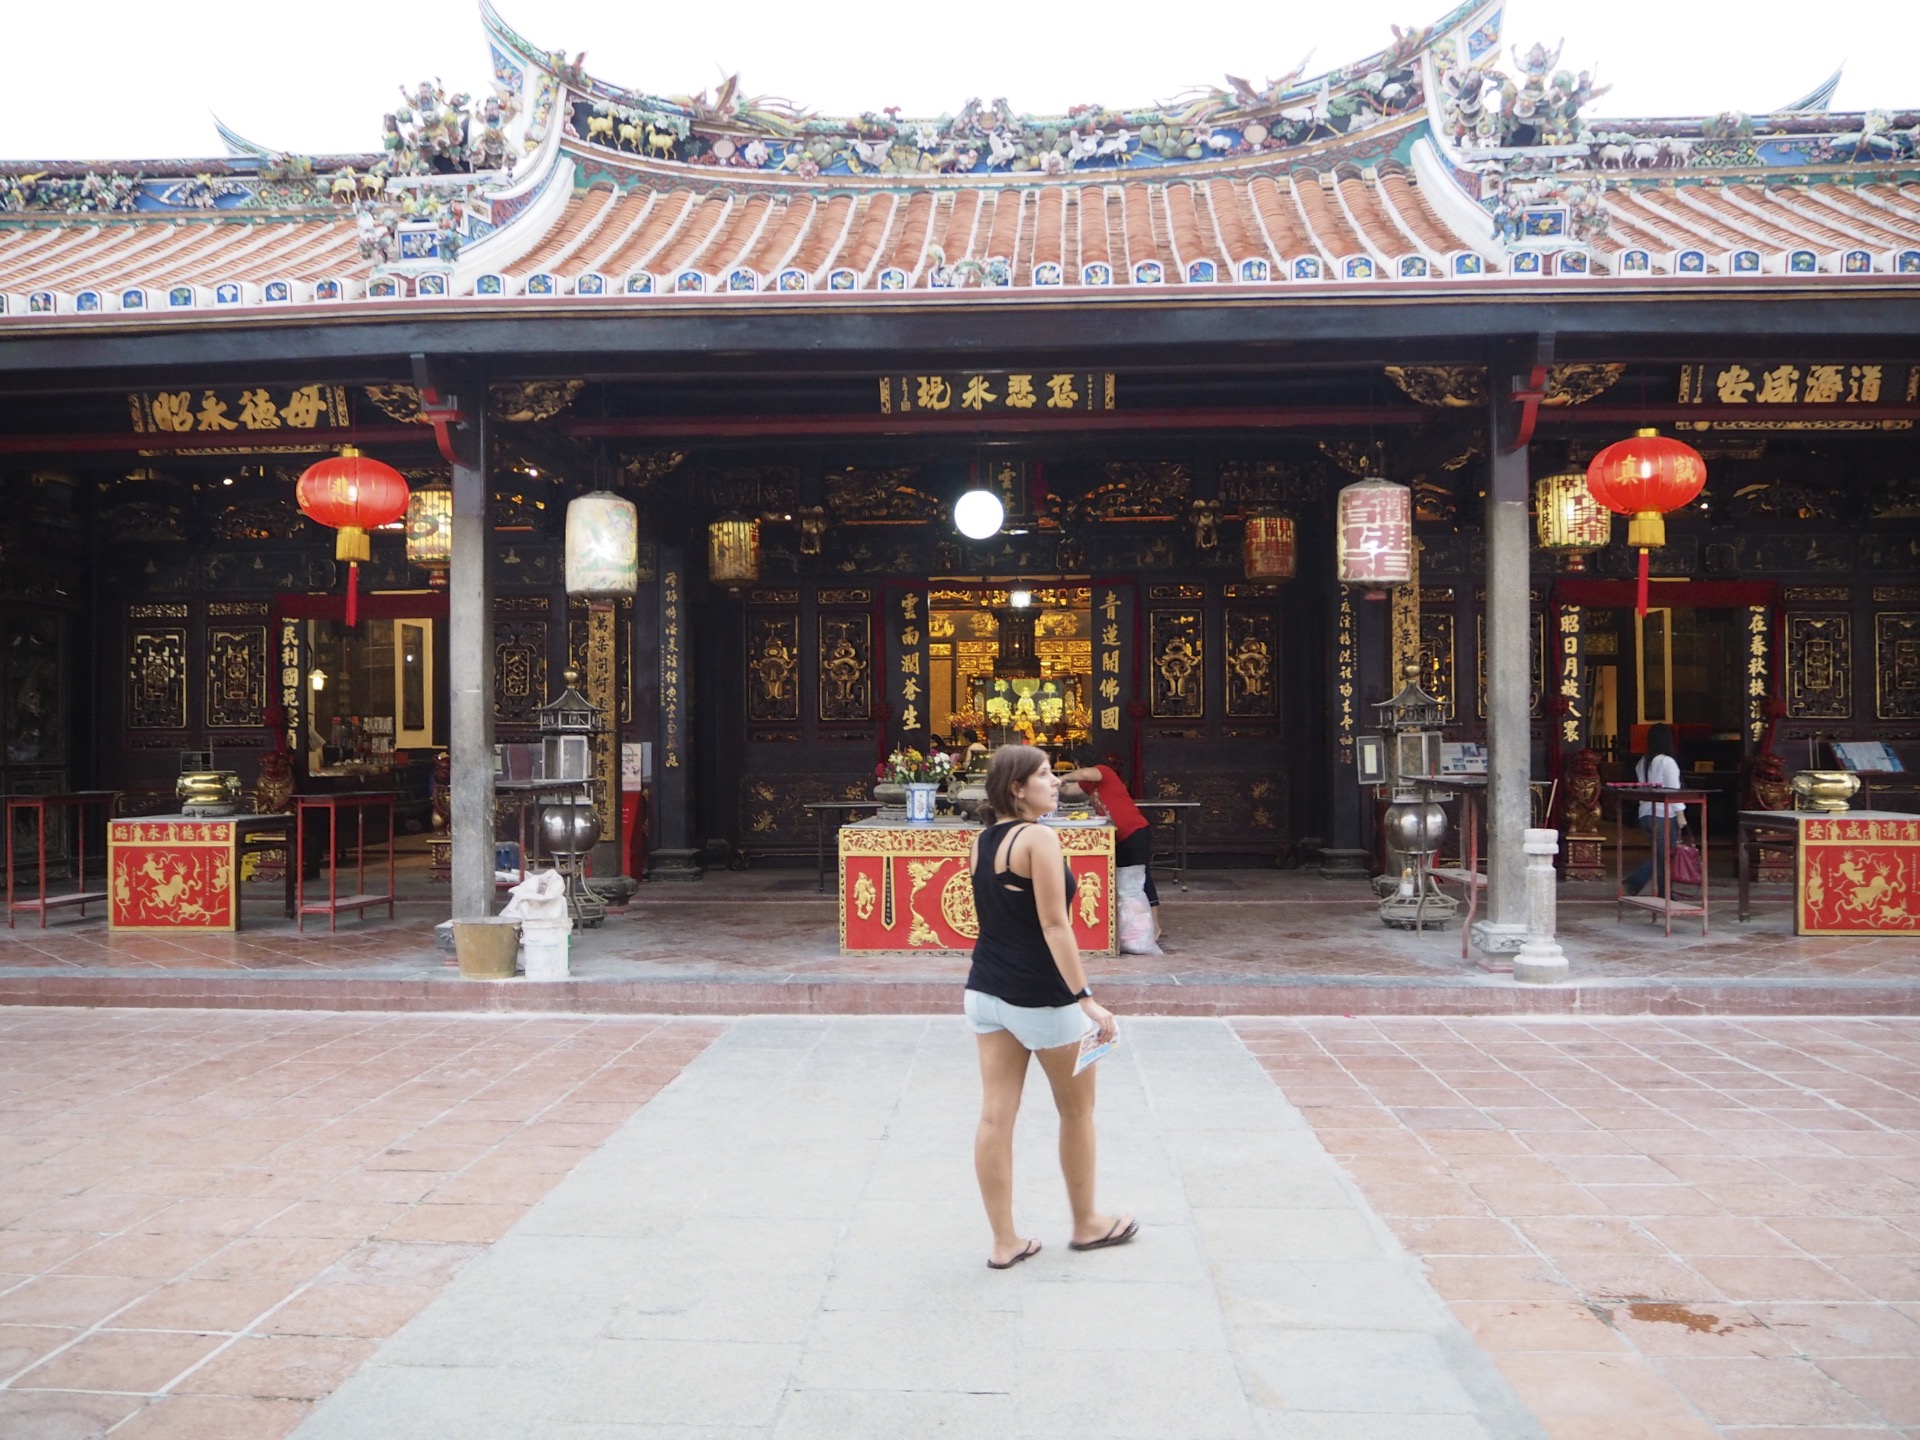 Templo chino